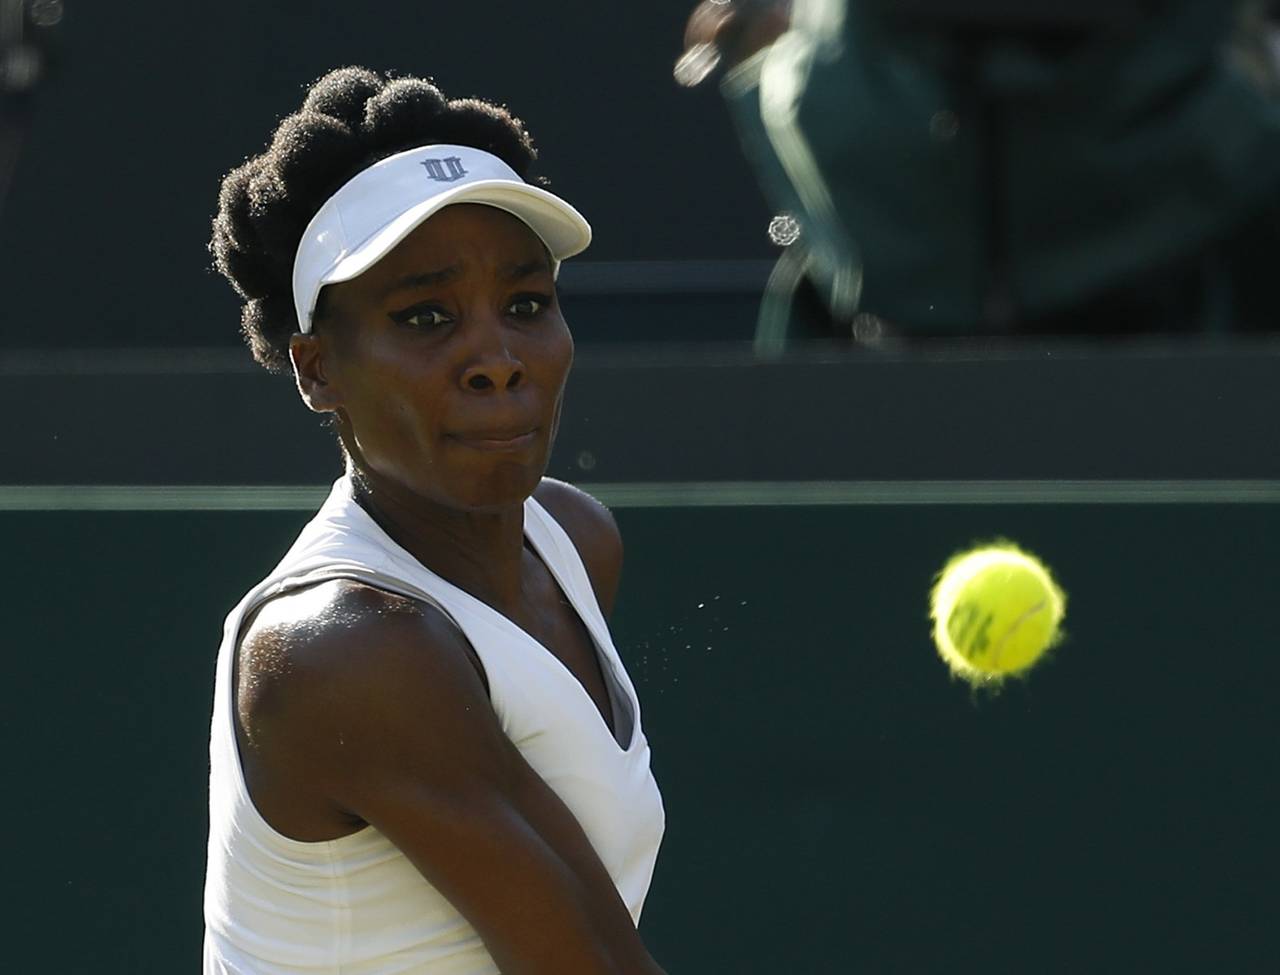 Video prueba la inocencia de la tenista Venus Williams. No es culpable Williams en trágico accidente 